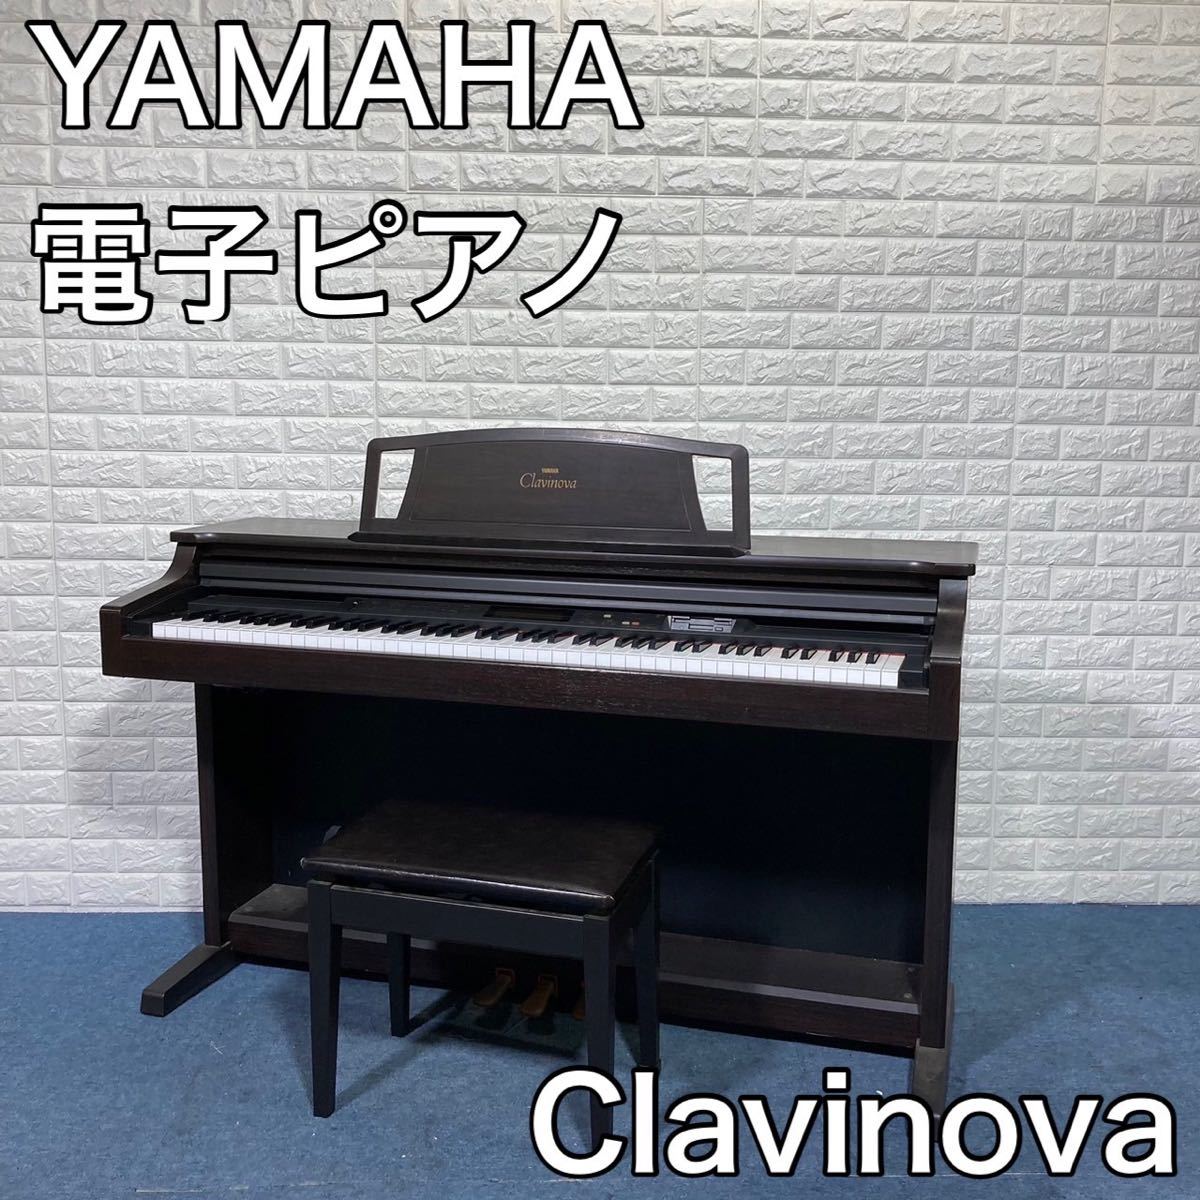 ヤマハ電子ピアノクラビノーバブラウン美品、値下げしました。